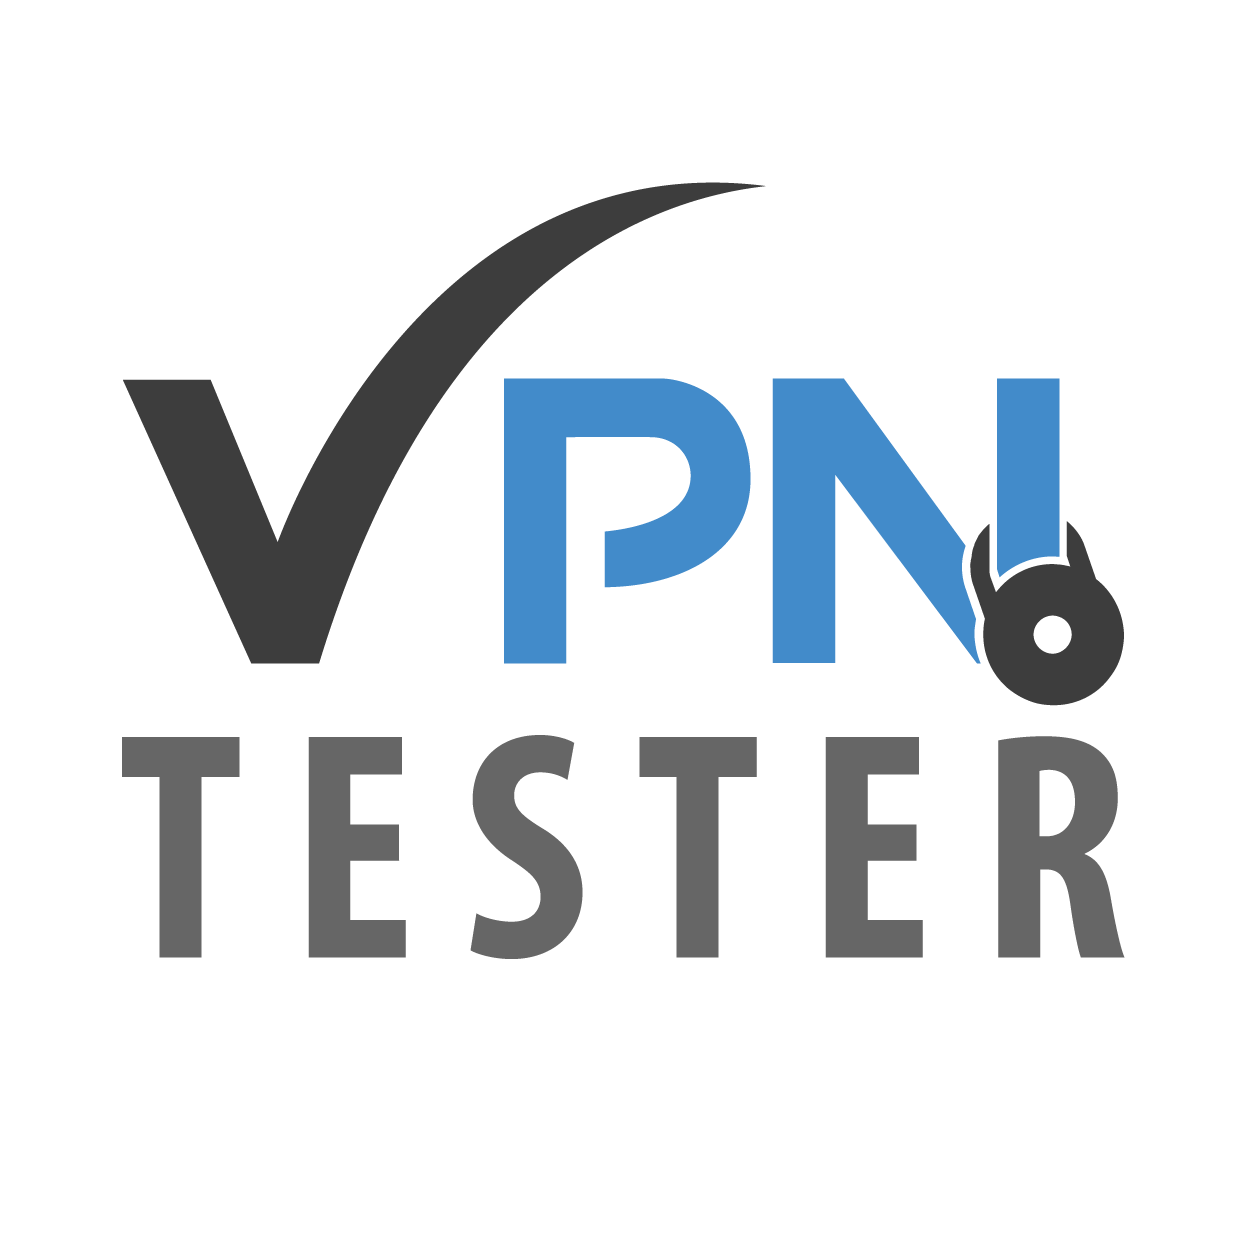 Trust.Zone VPN Testbericht 2022 - preiswert, aber mit Schwächen 1